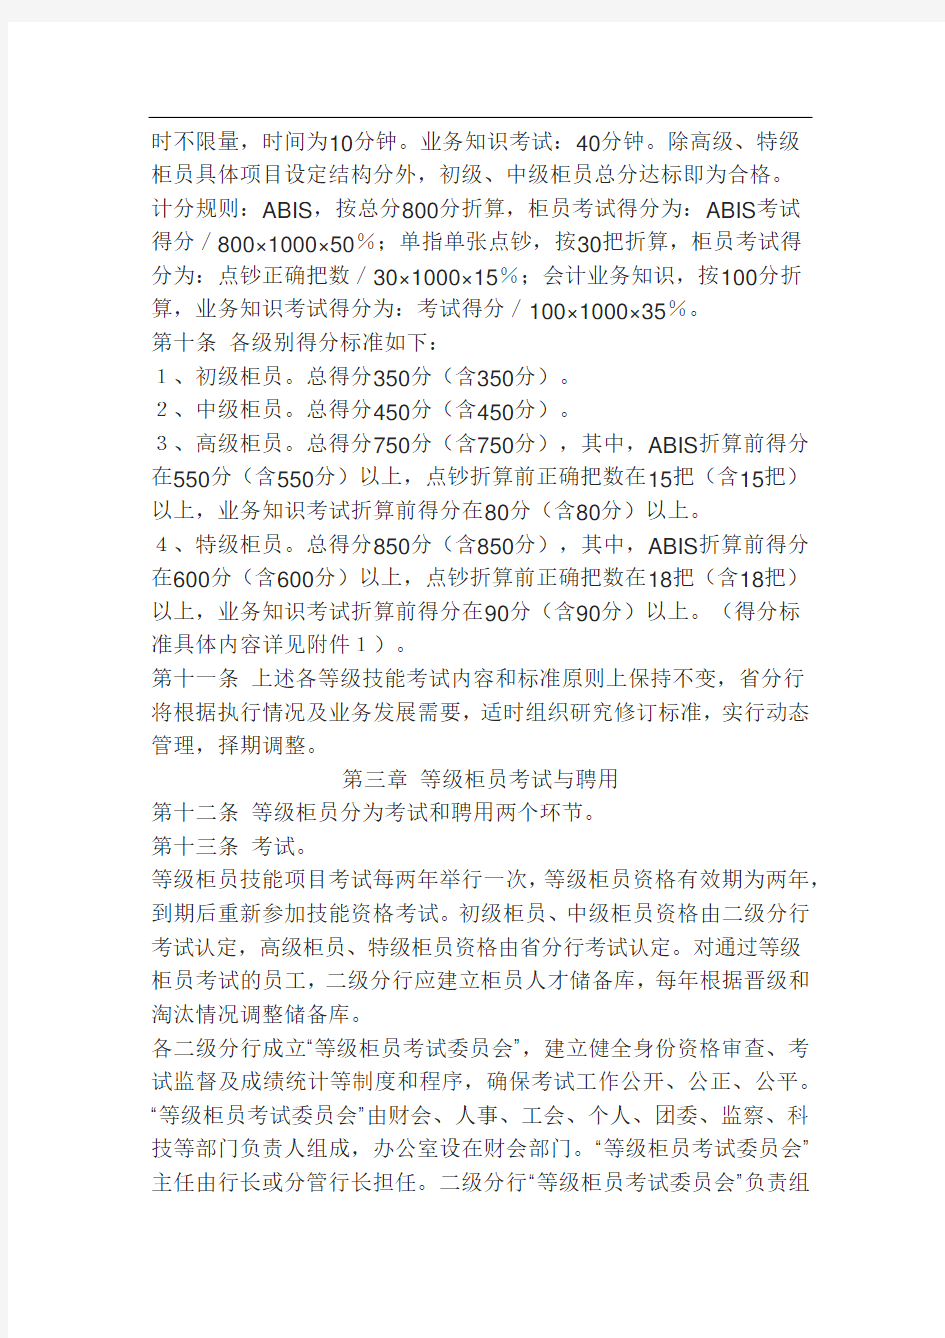 中国农业银行某分行等级柜员管理办法